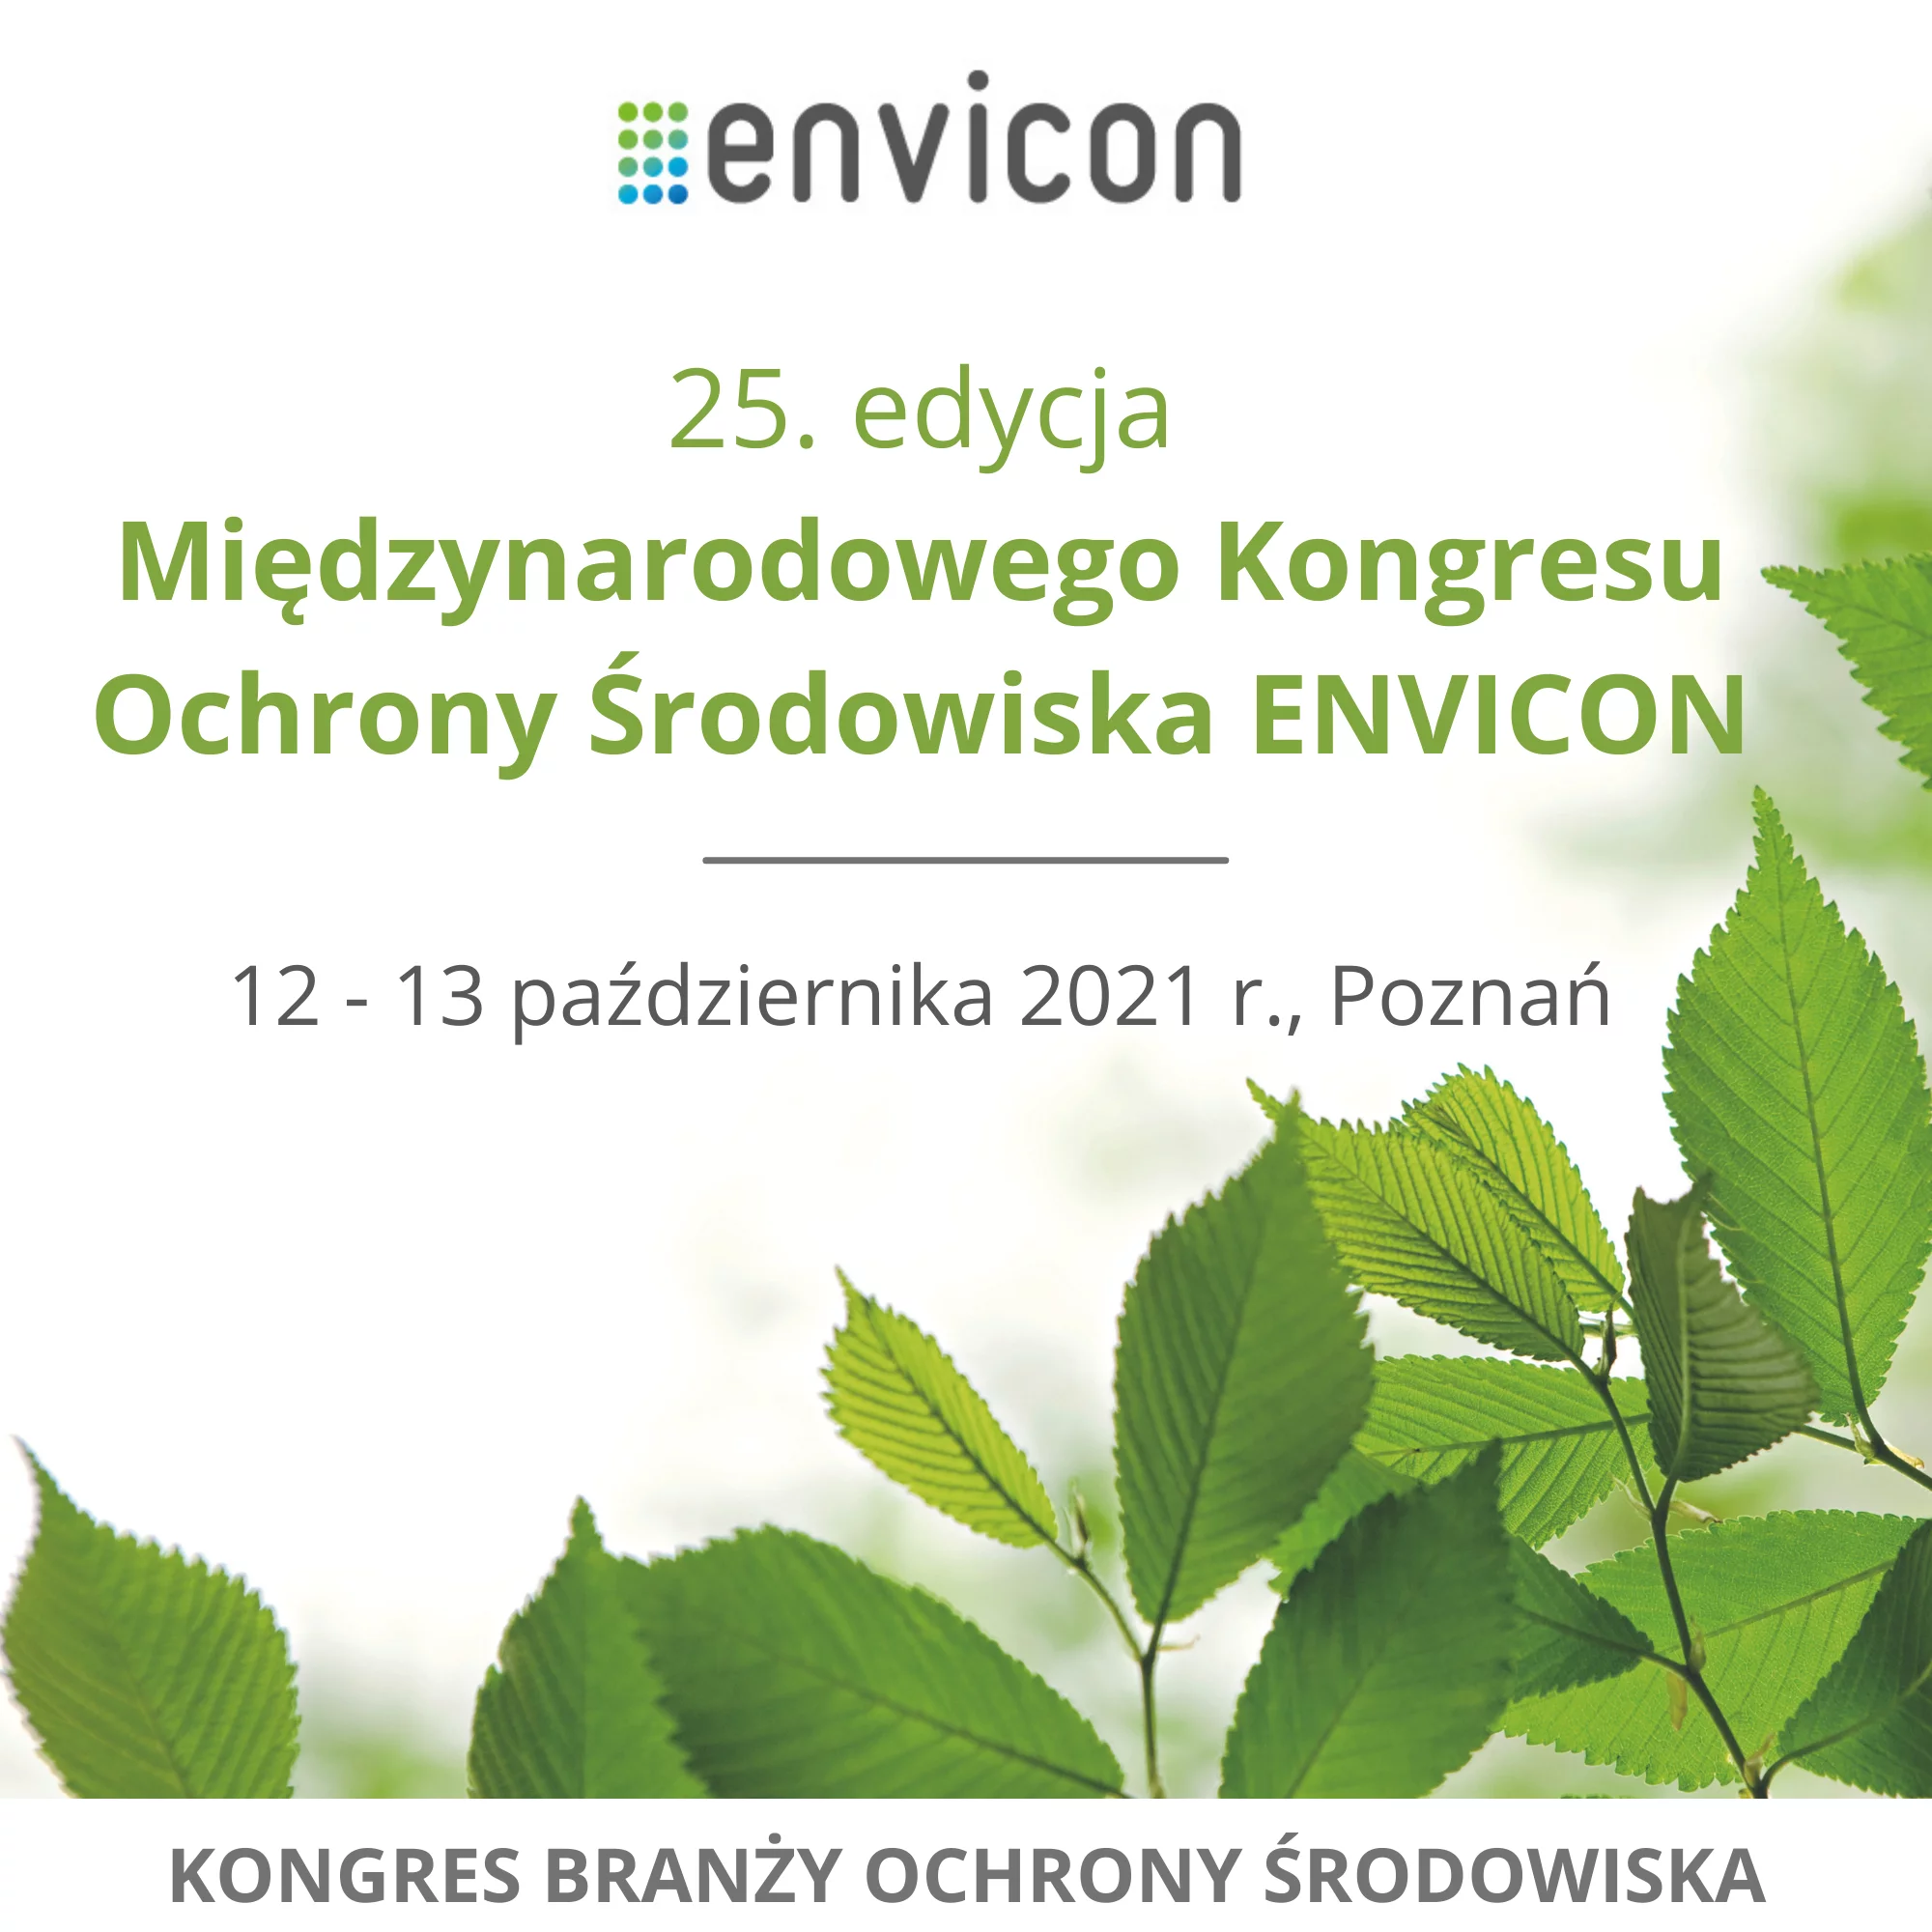 Międzynarodowego Kongresu Ochrony Środowiska ENVICON